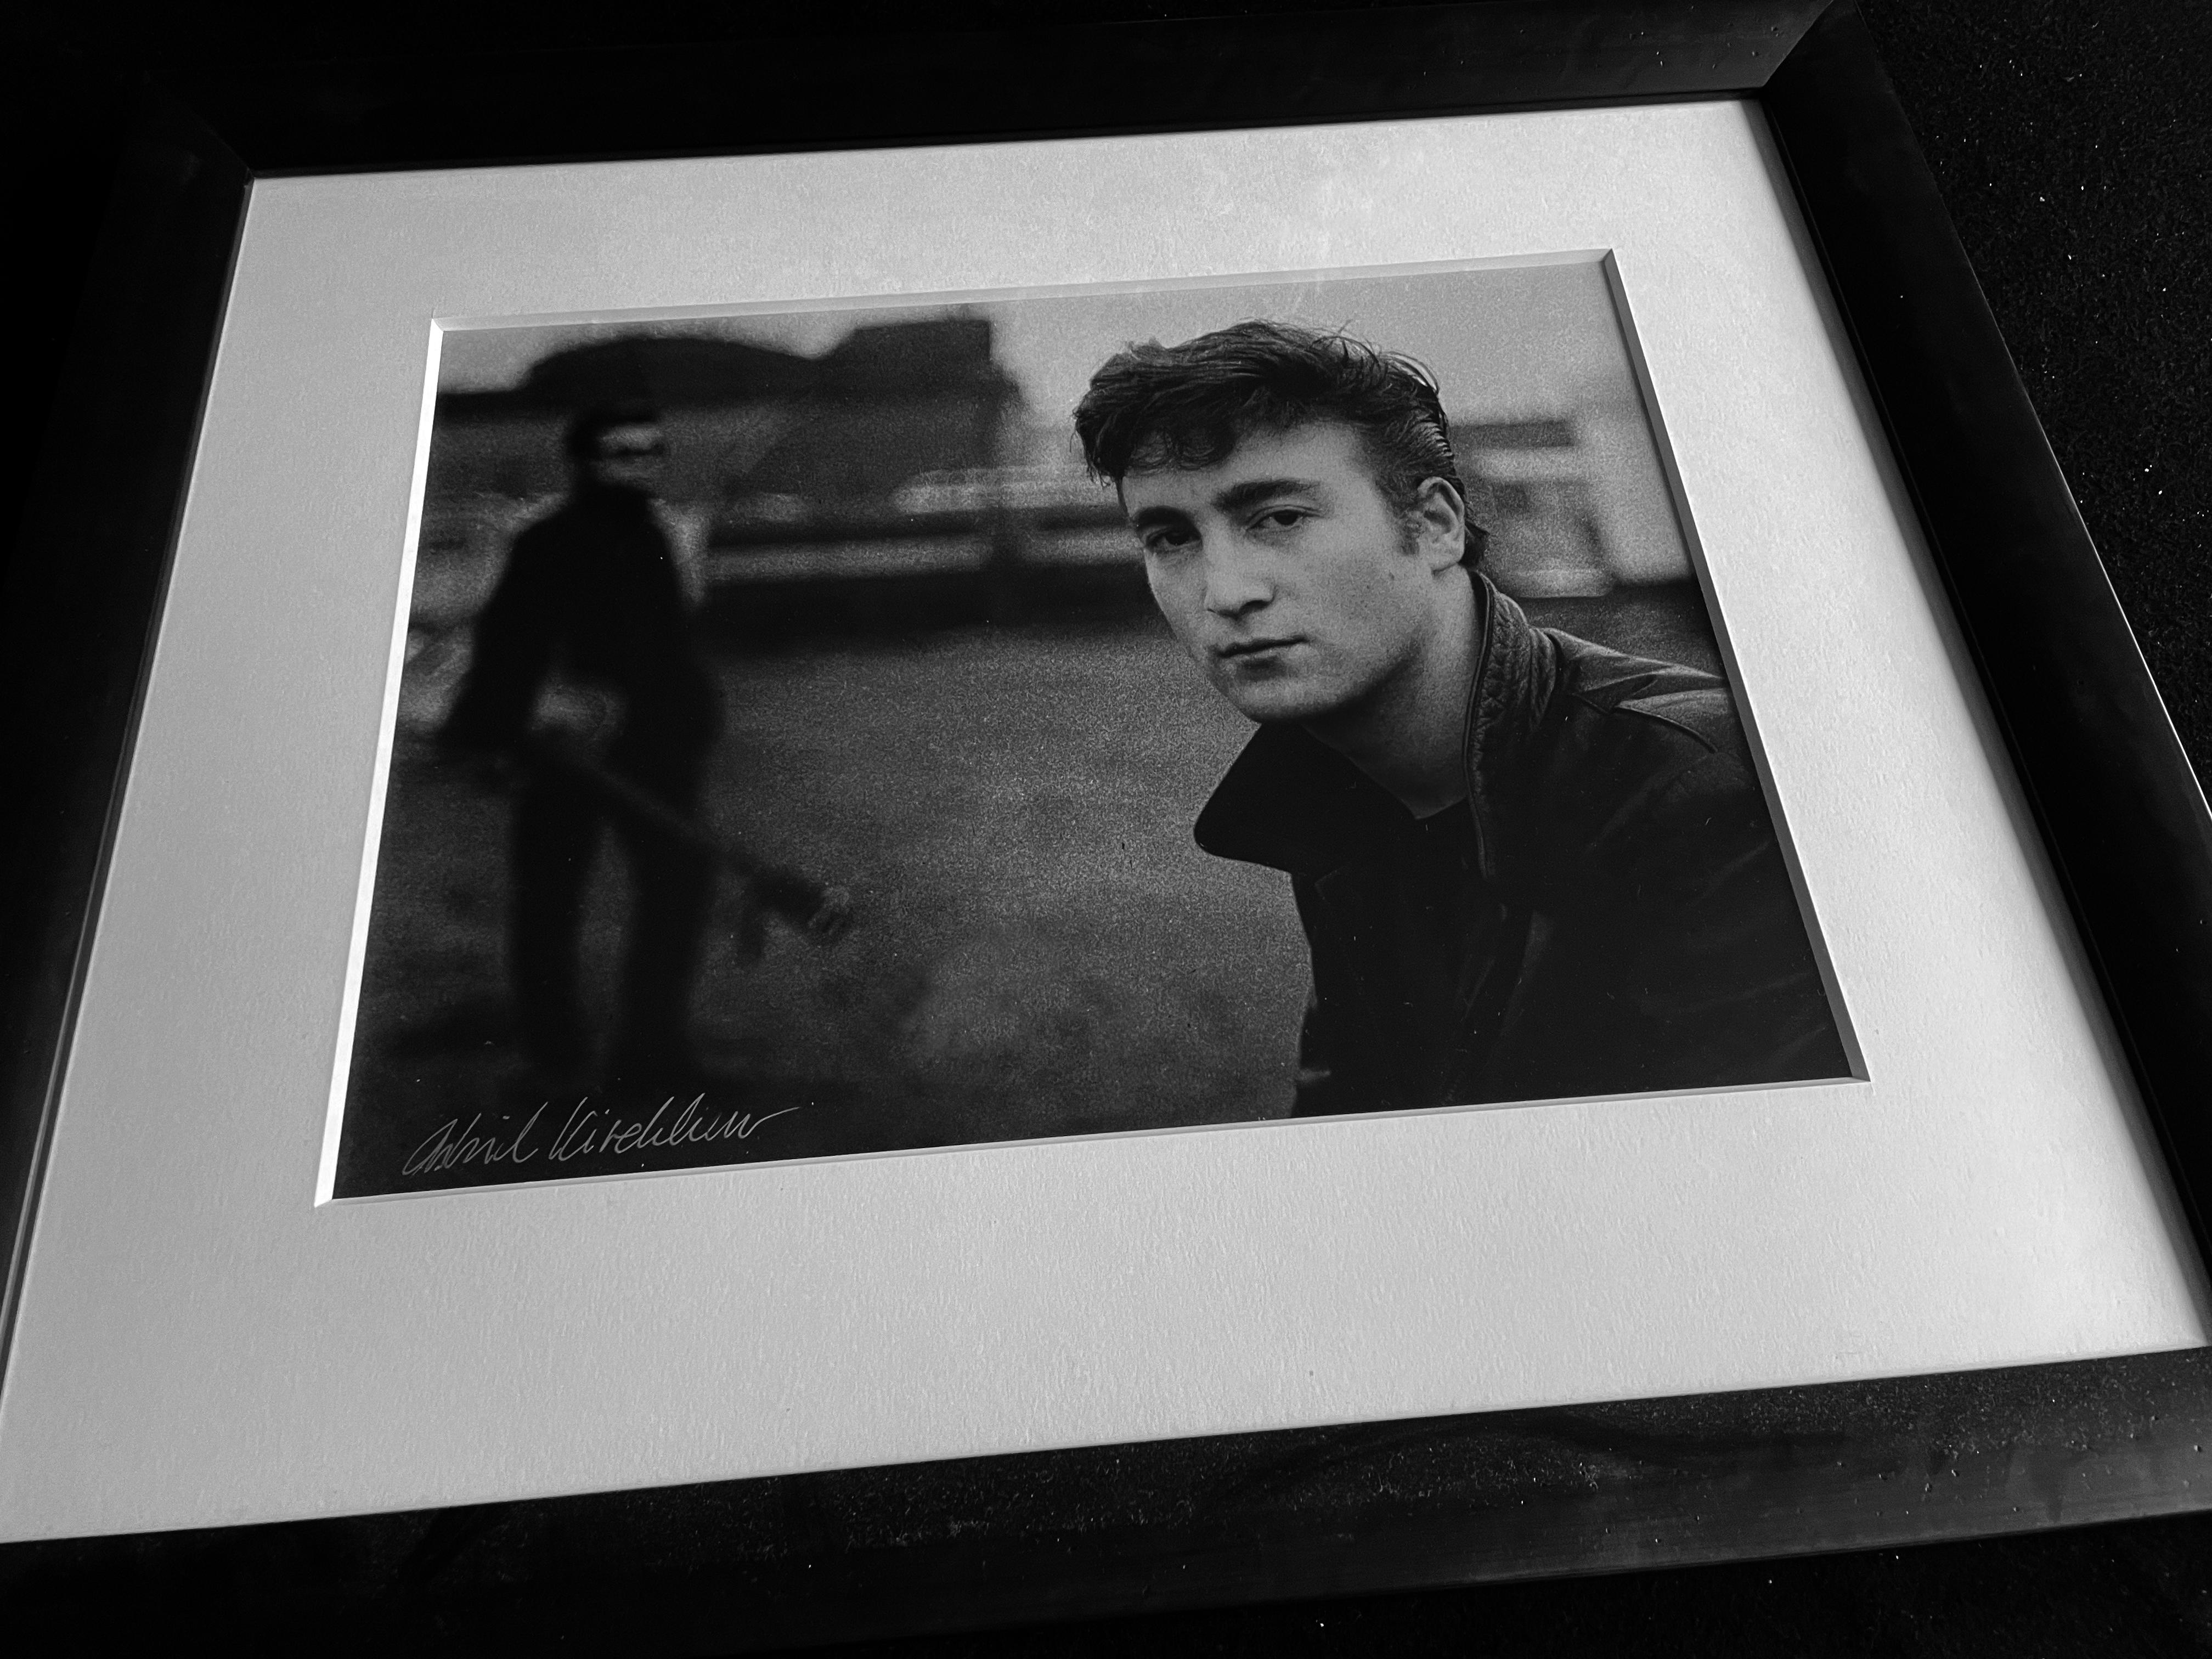 John Lennon Fairground - Photograph by Astrid Kirchherr